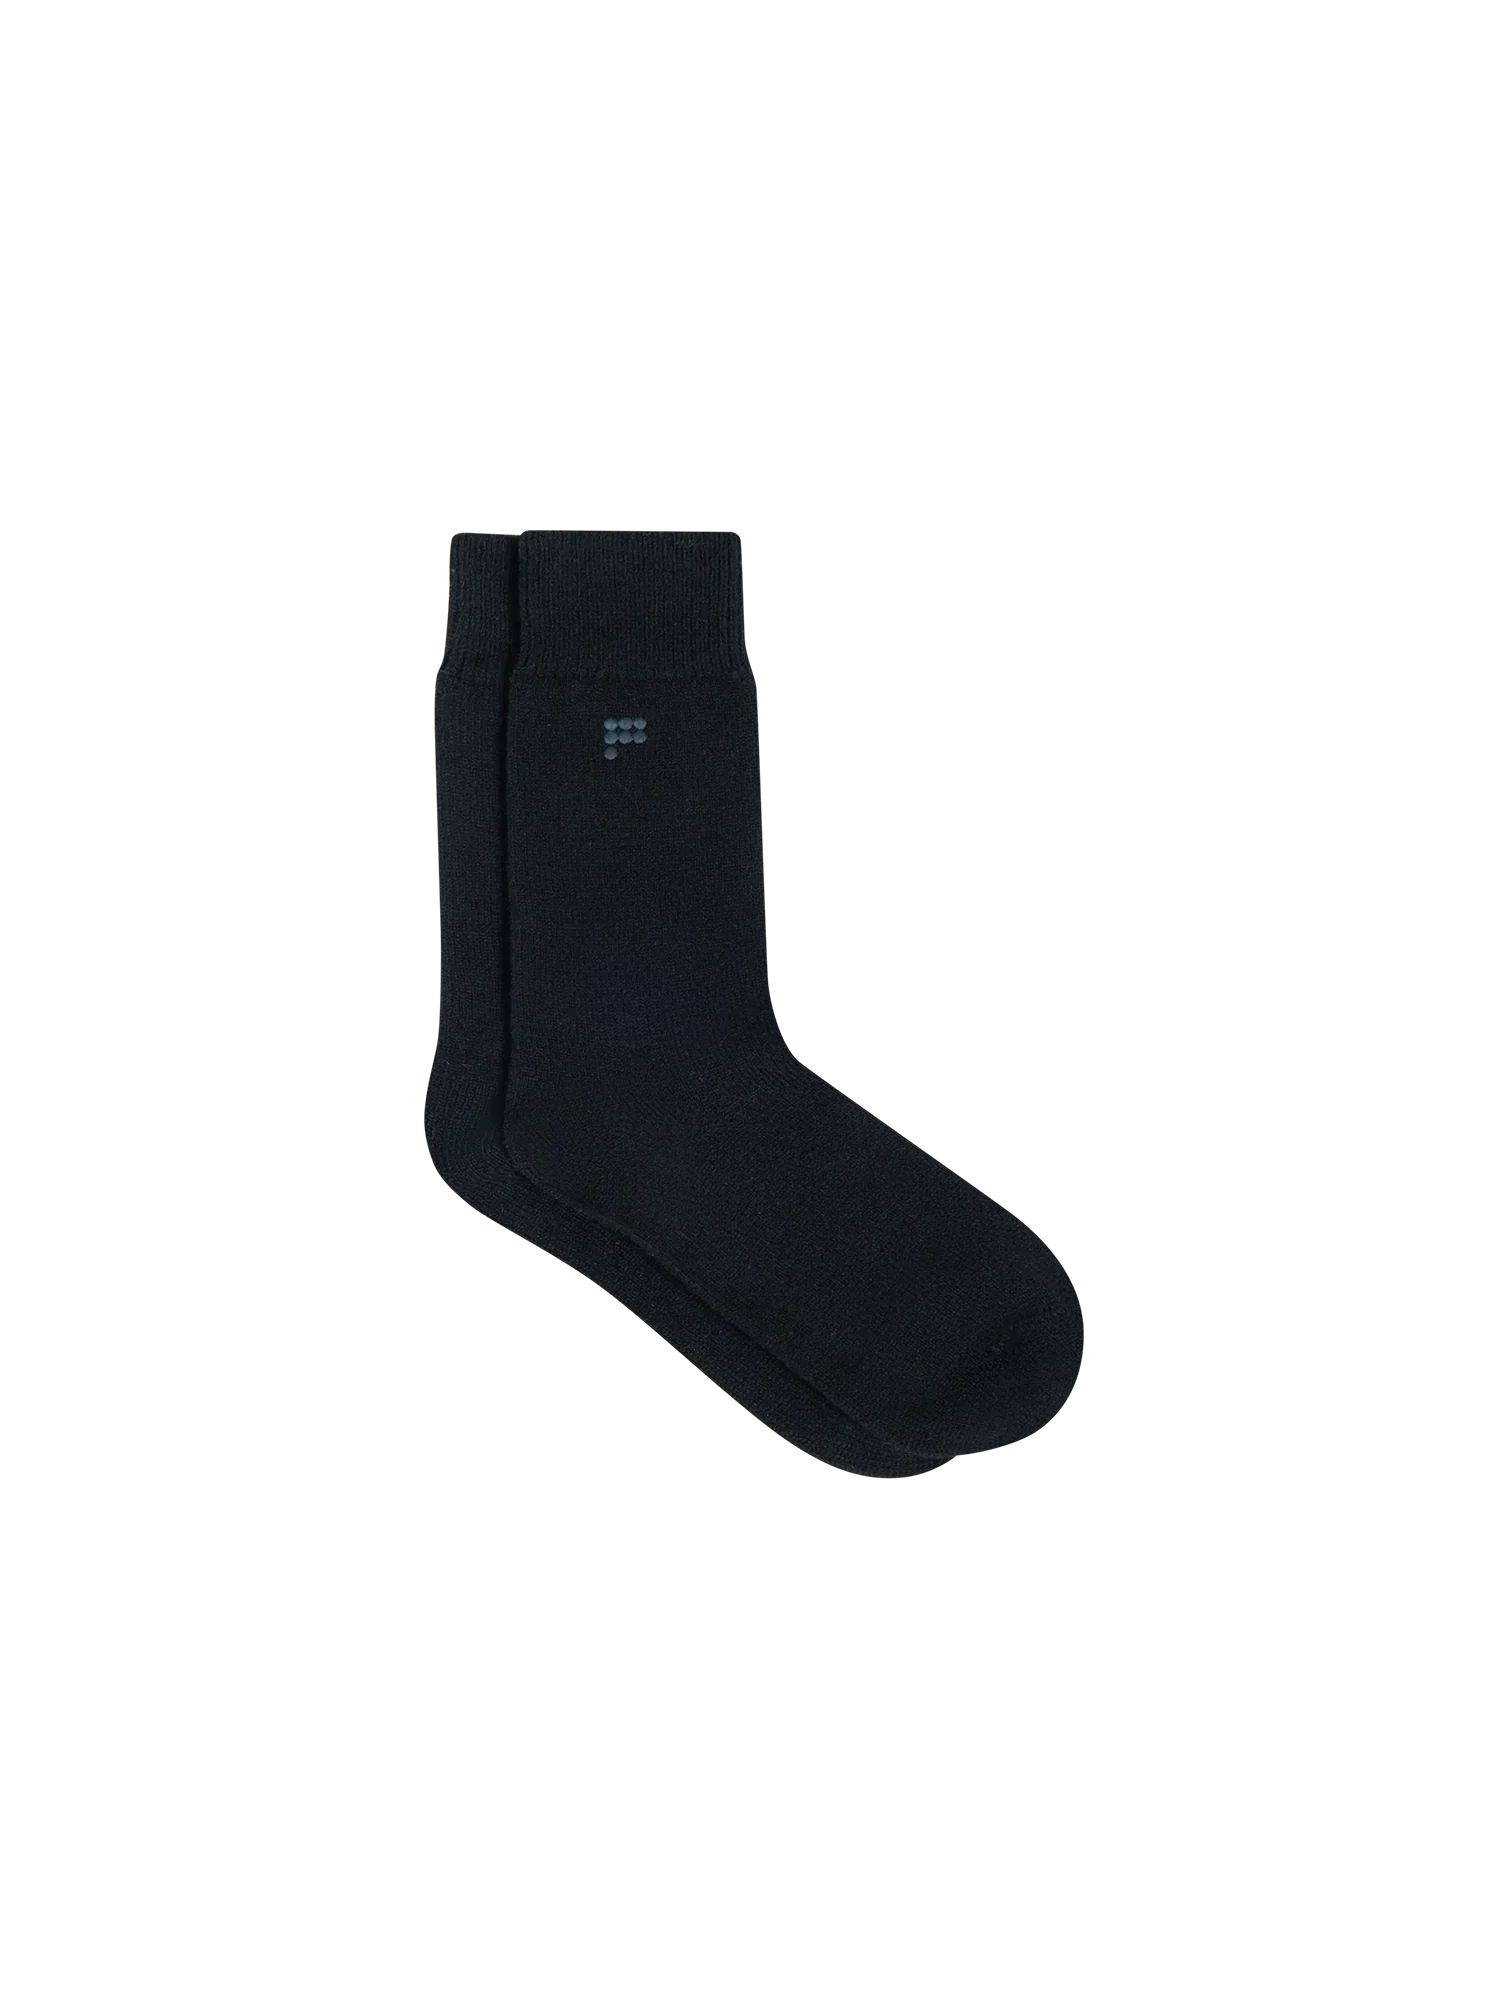 Recycled Cashmere Socks - Black - Pangaia | The Pangaia (EU, UK, AUS)